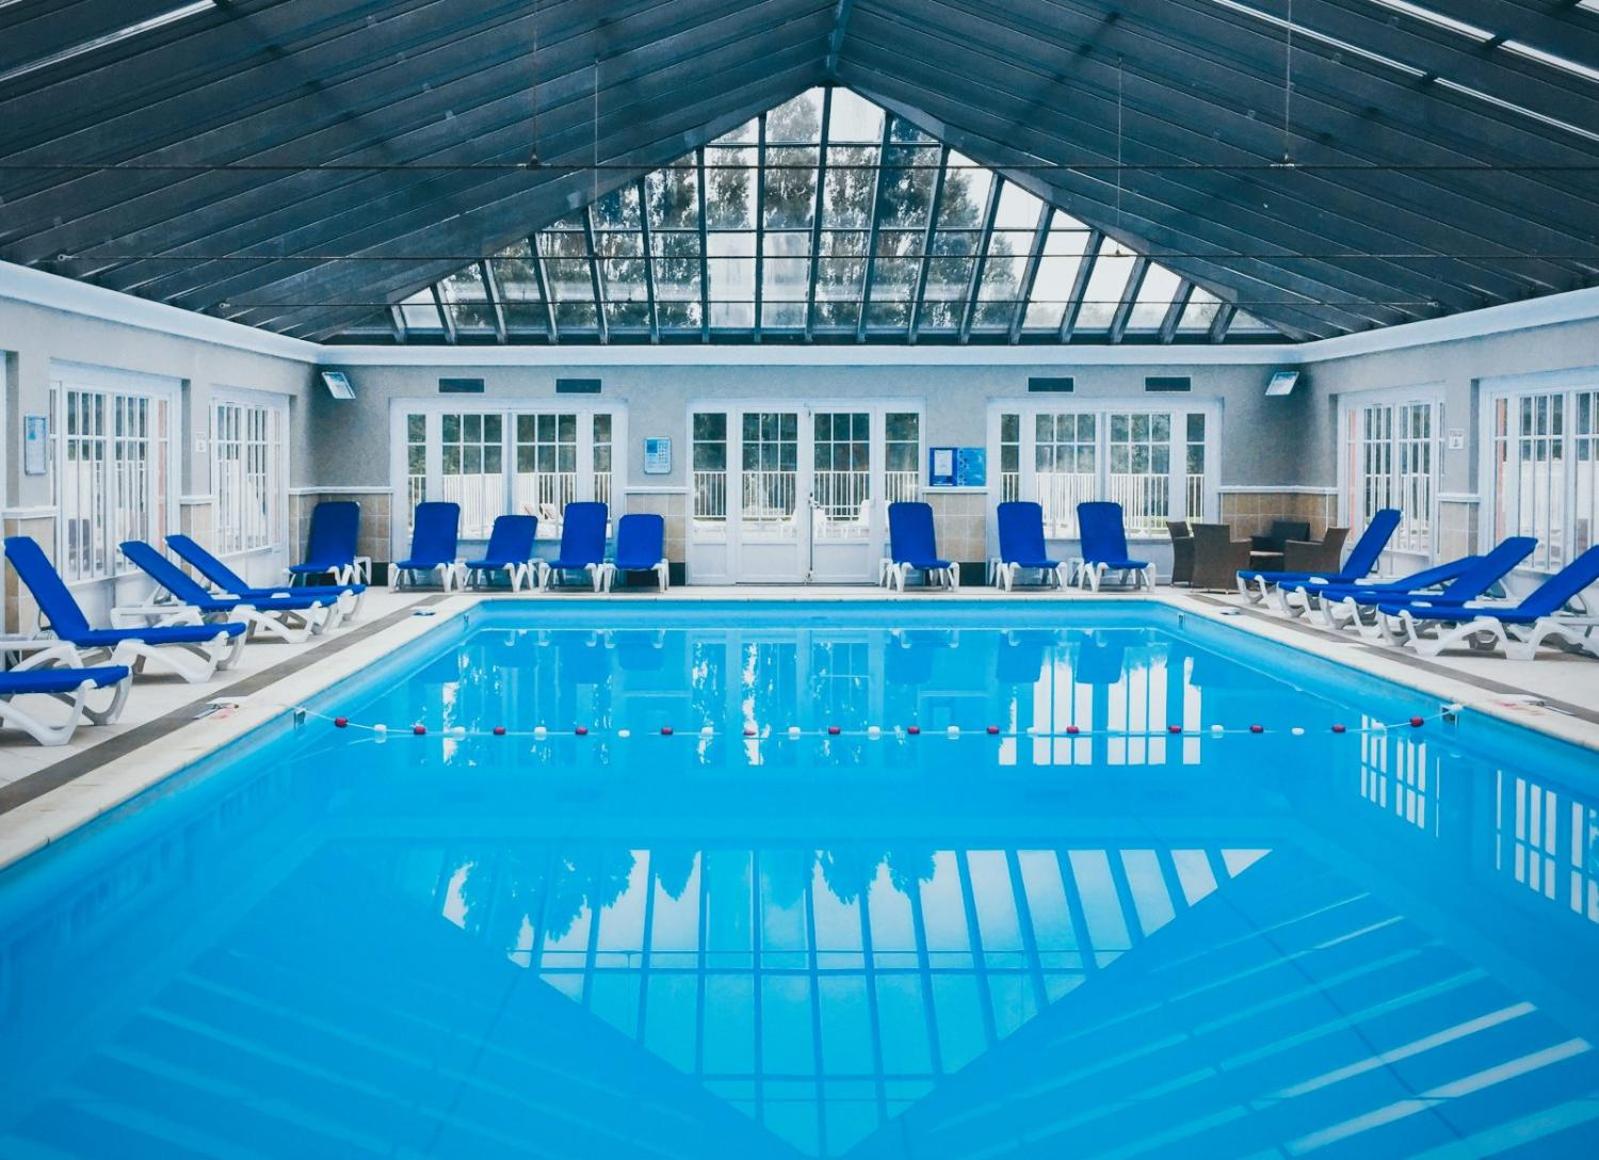 À CÔTÉ DE LA BAIE DE CANCHE-Appt 6 pers-2 chambres-4 lits-linge inclus-piscine chauffée-Tennis-parking